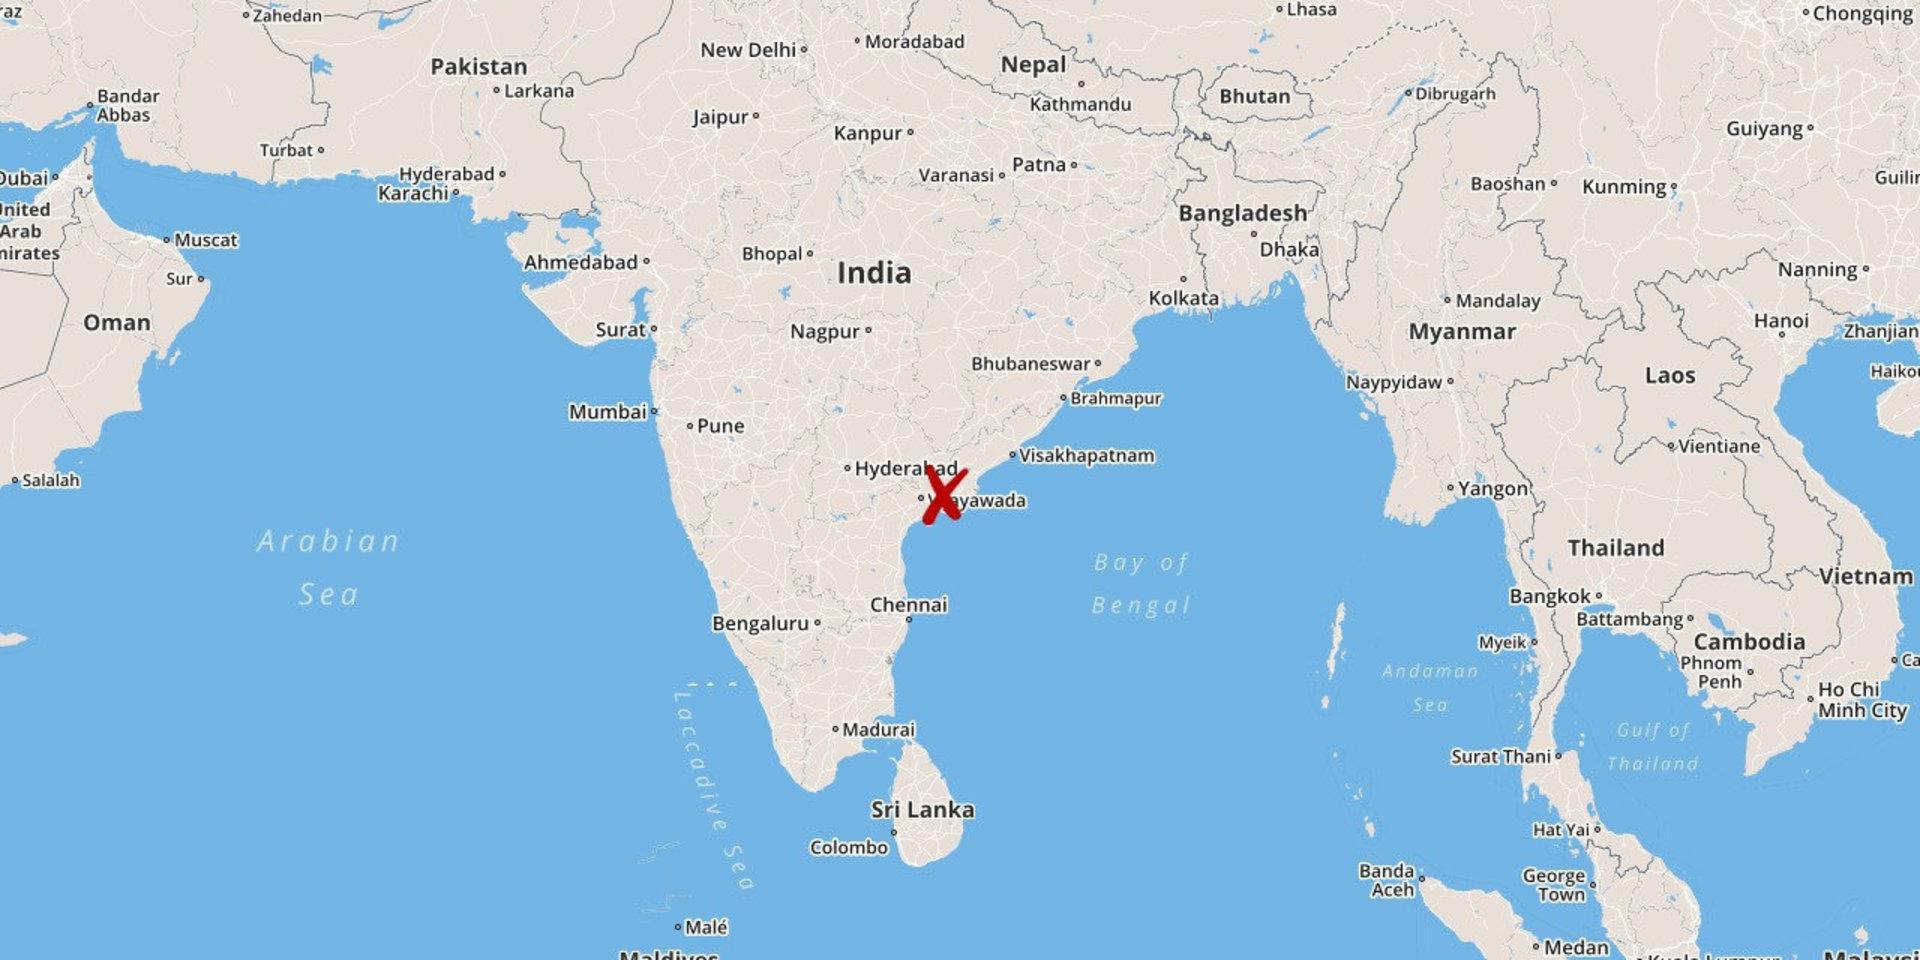 Olyckan inträffade nära Rajahmundry i sydöstra Indien.